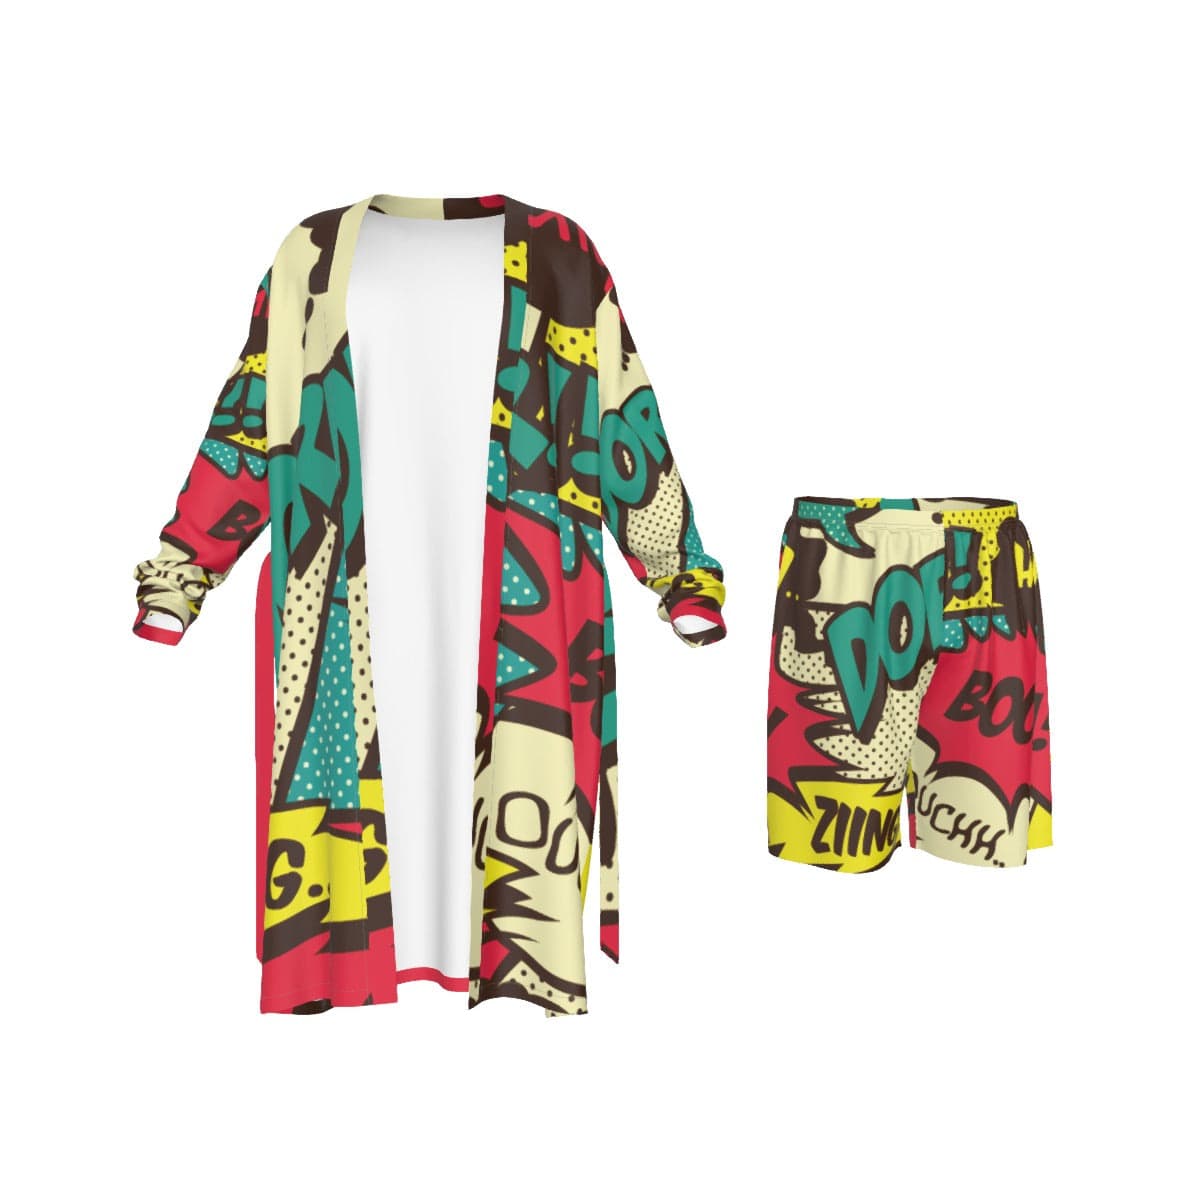 Yoycol 2XL / White Comical Boom, Crash Bang - All-Over Print Man's Long Kimono Pajamas Suit